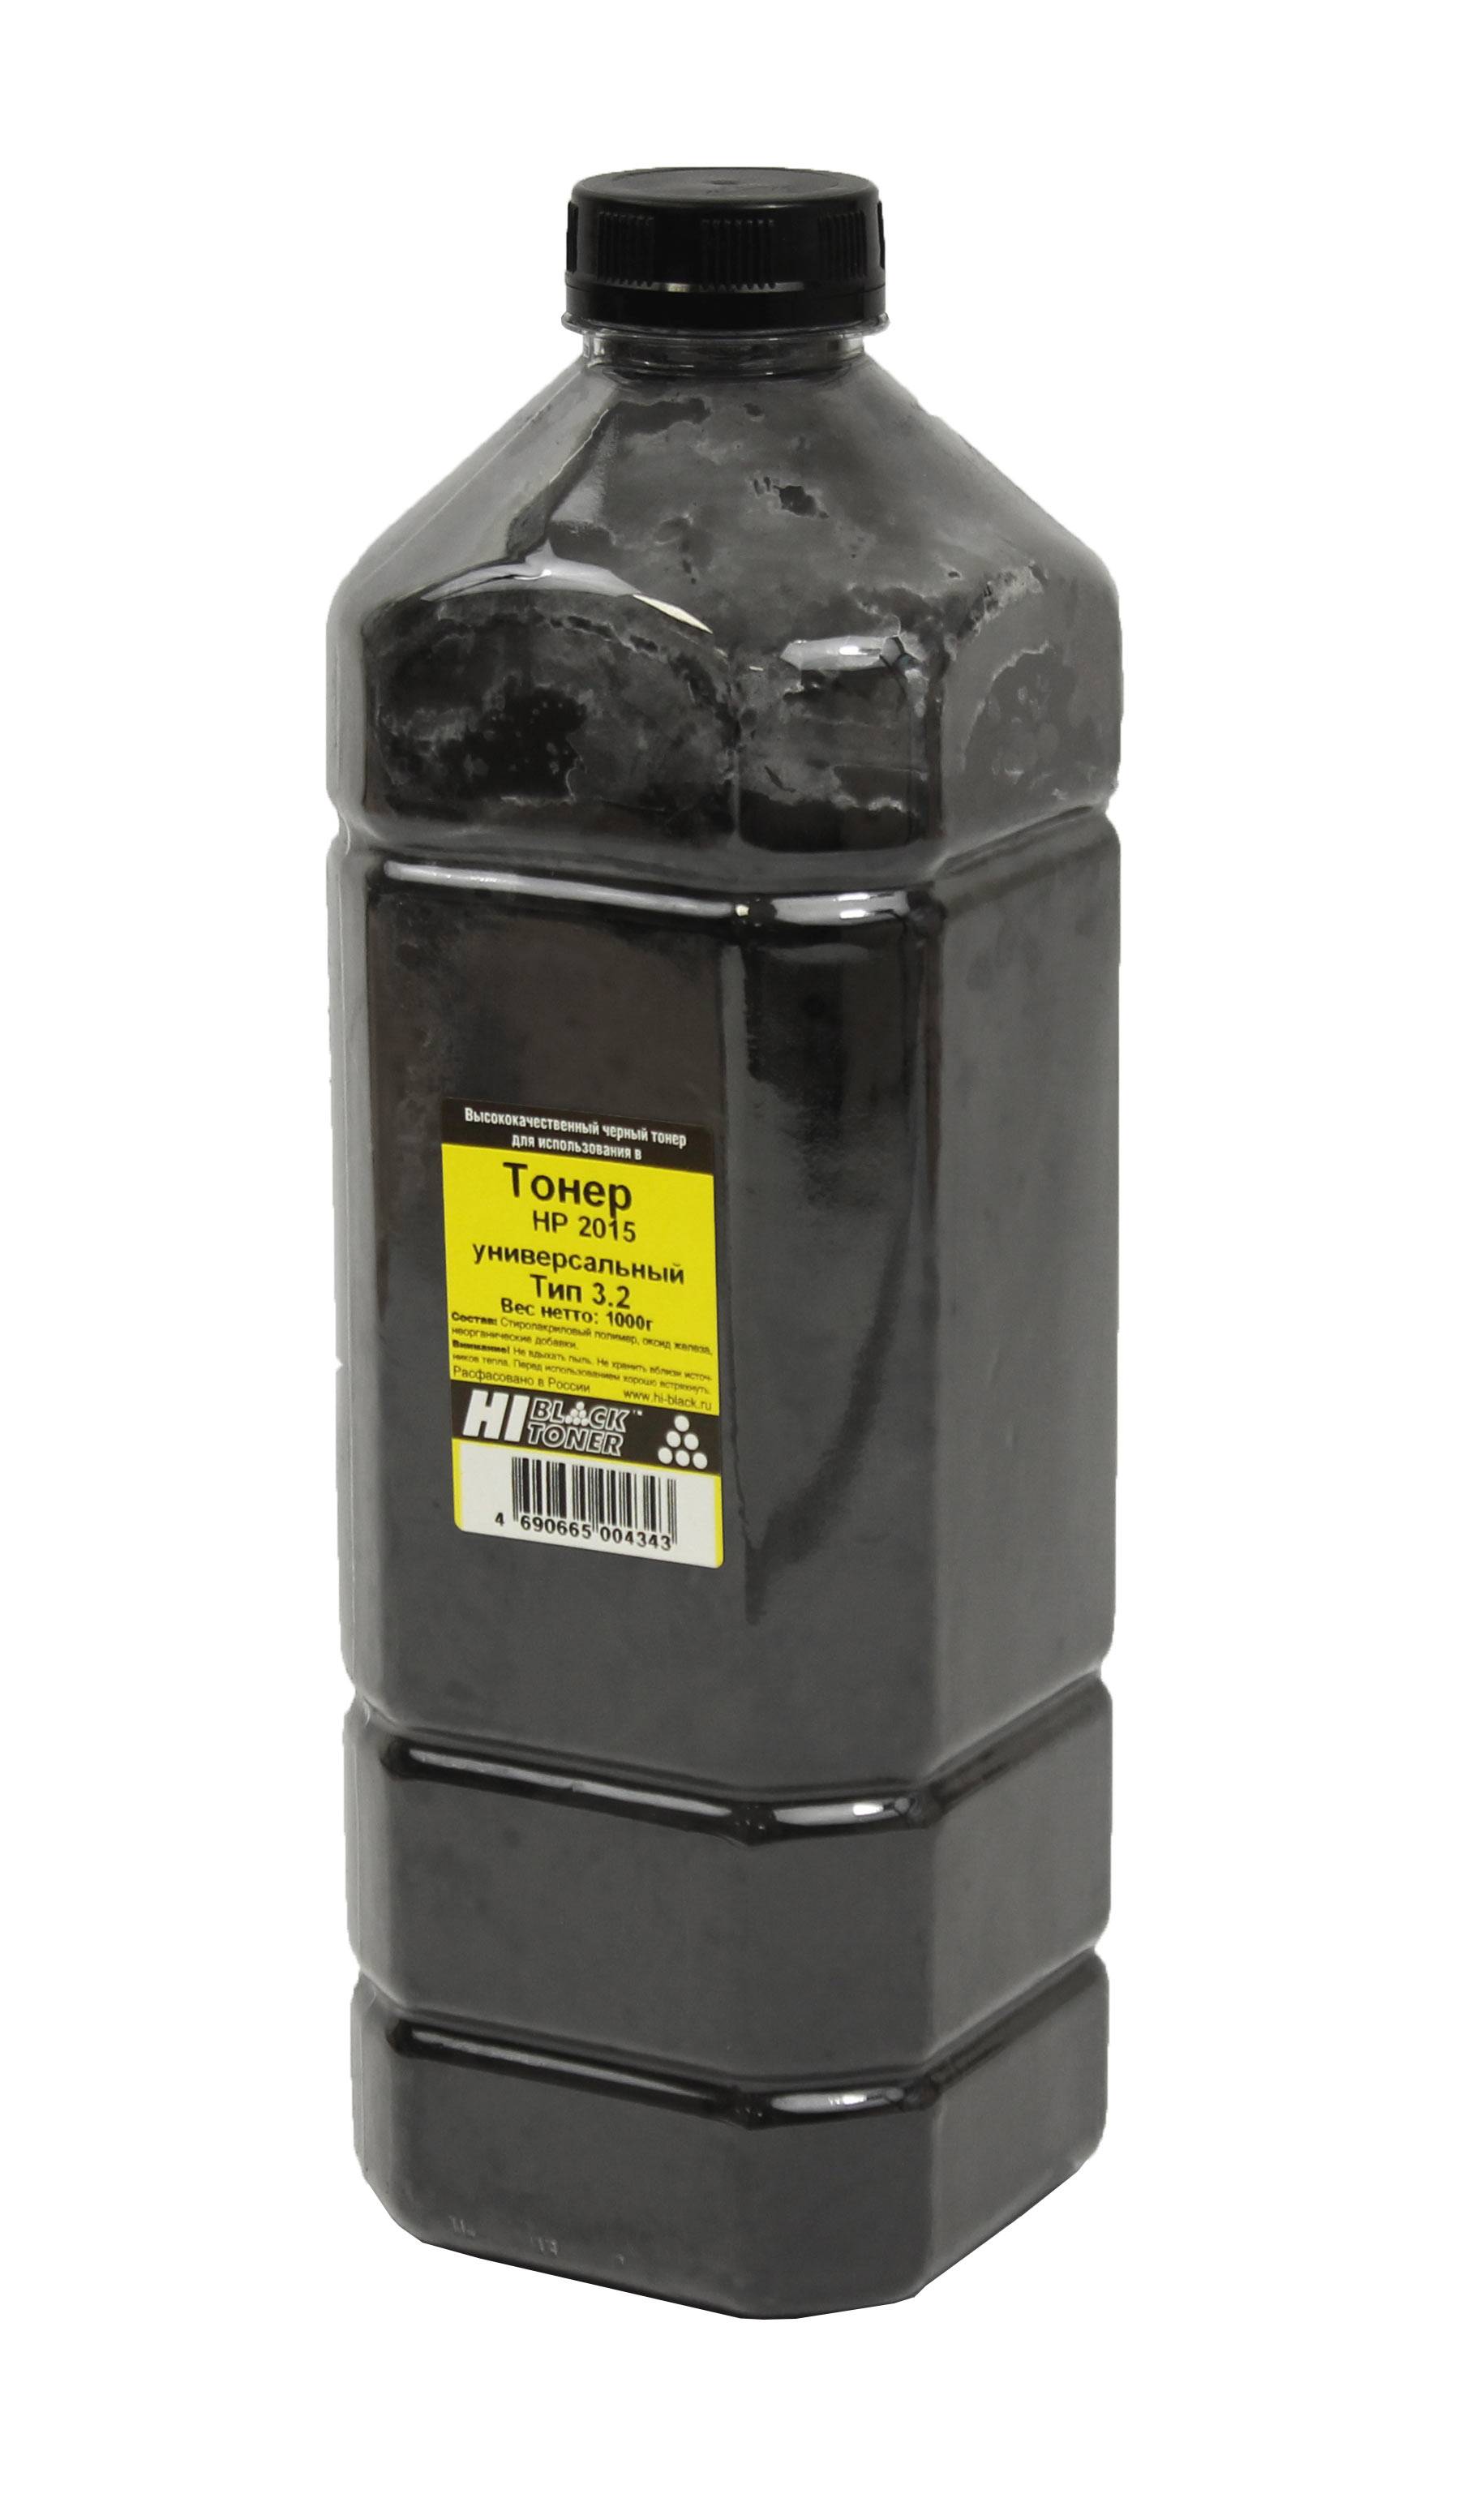 Тонер Hi-Black Универсальный для HP LJ P2015, Тип 3.2, Bk, 1 кг, канистра